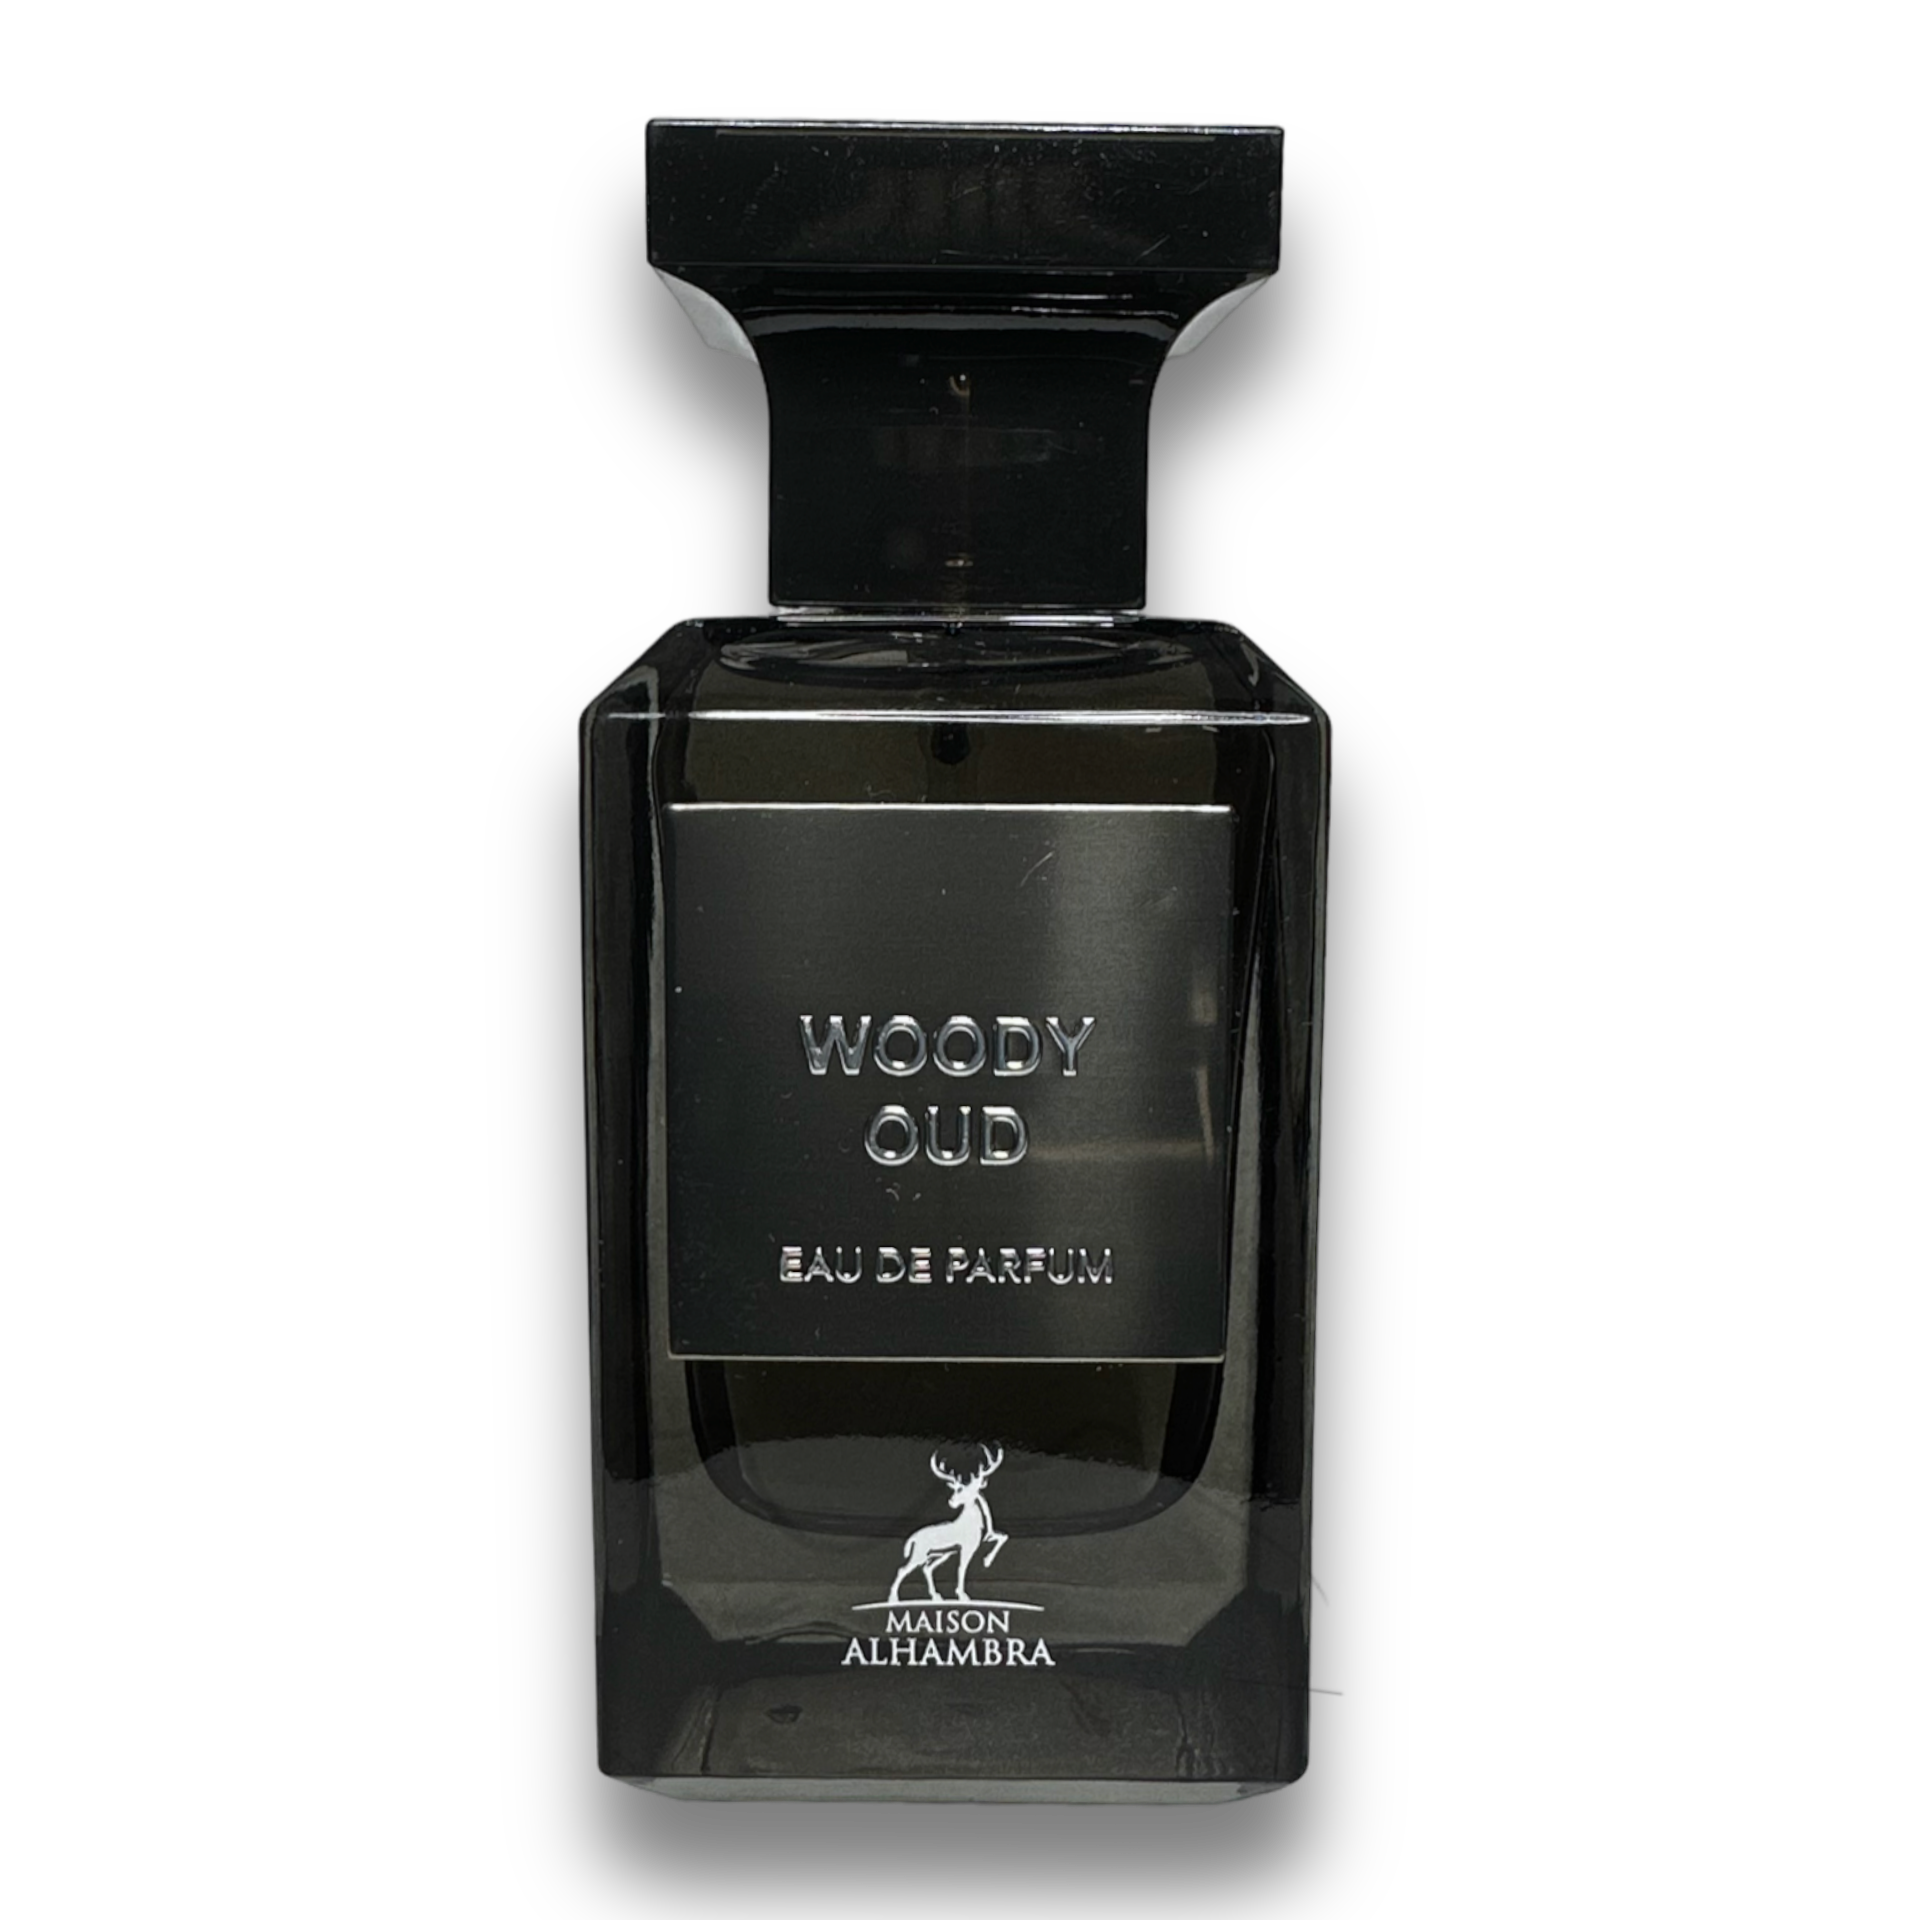 Woody oud (Oud wood) - Eau de parfum – maisonlovati